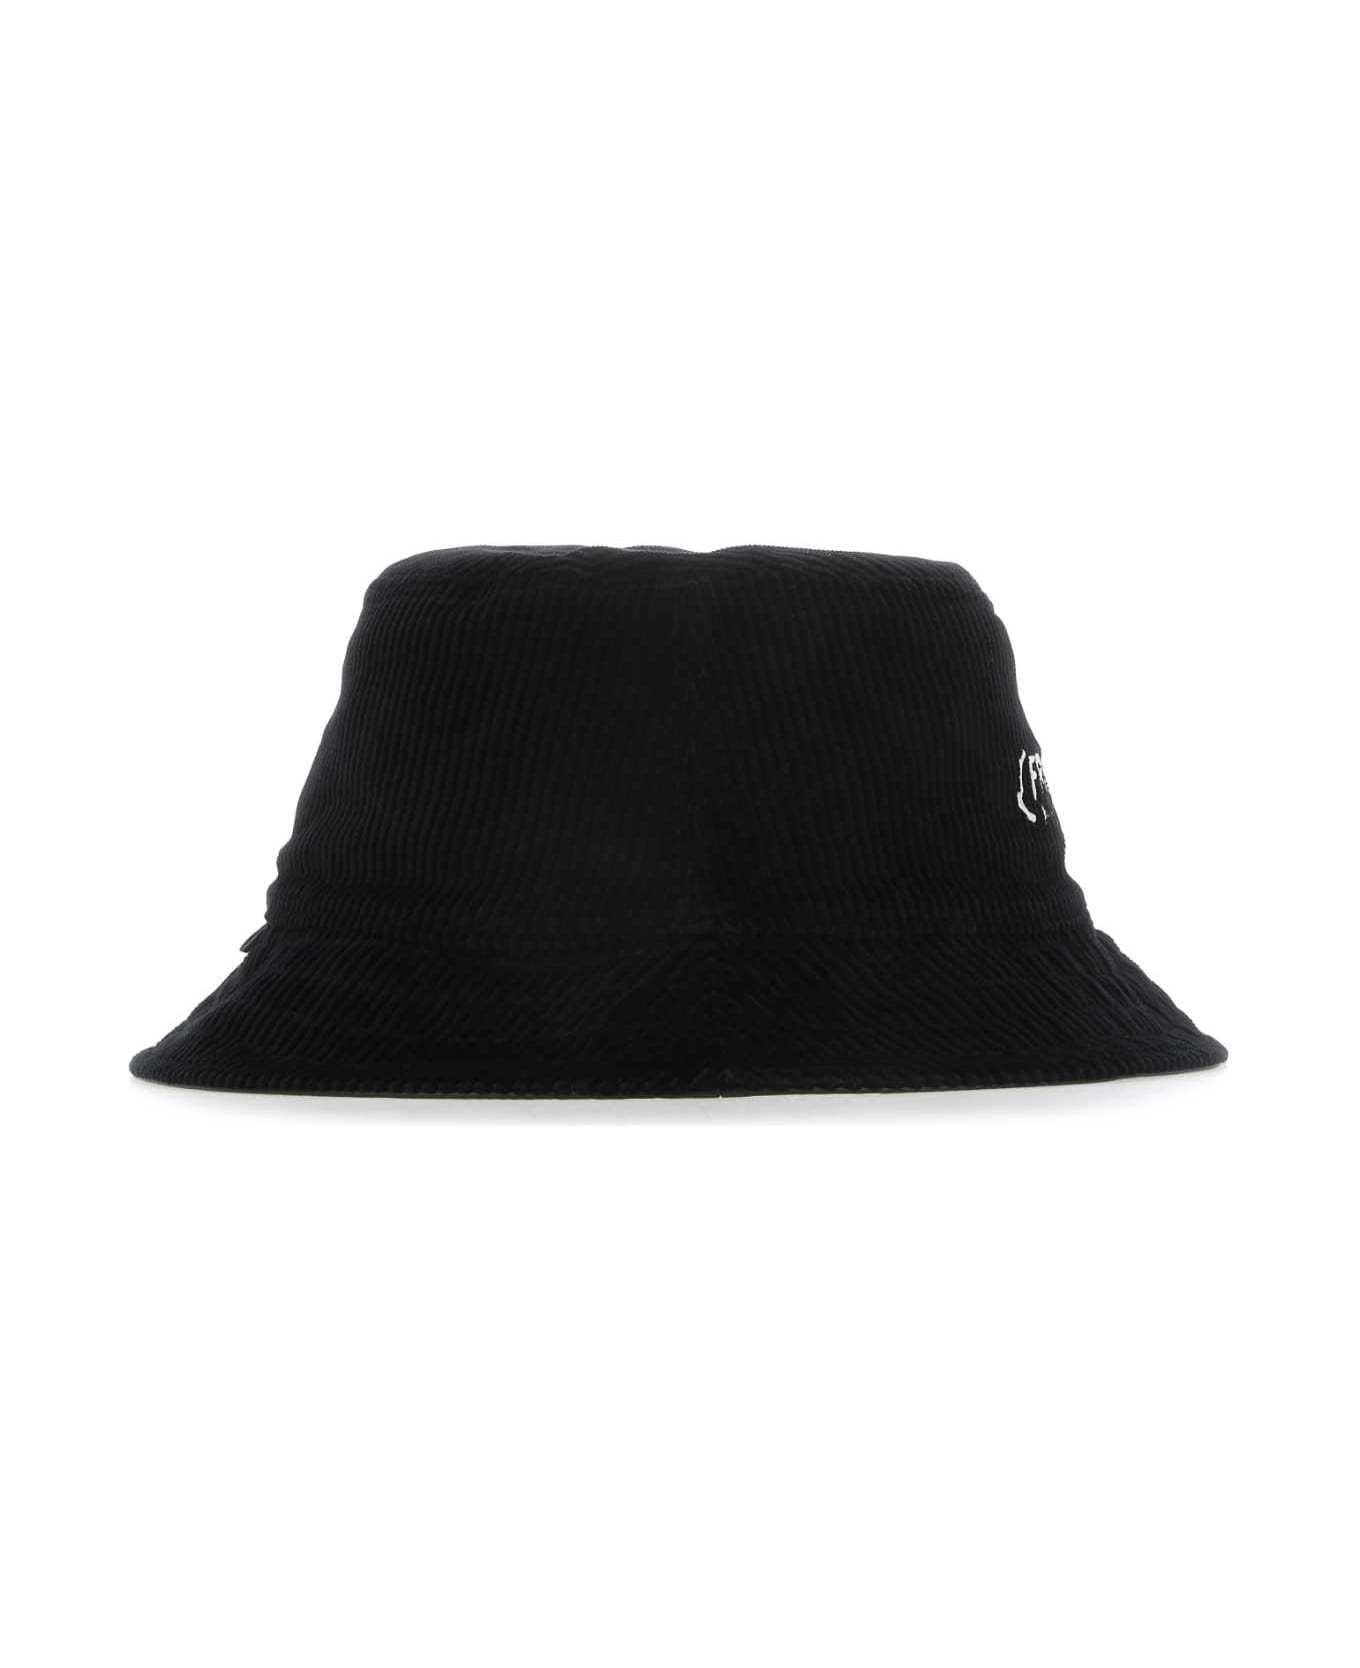 Moncler Genius Black 7 Moncler Fragment Hiroshi Fujiwara Hat - 999 帽子